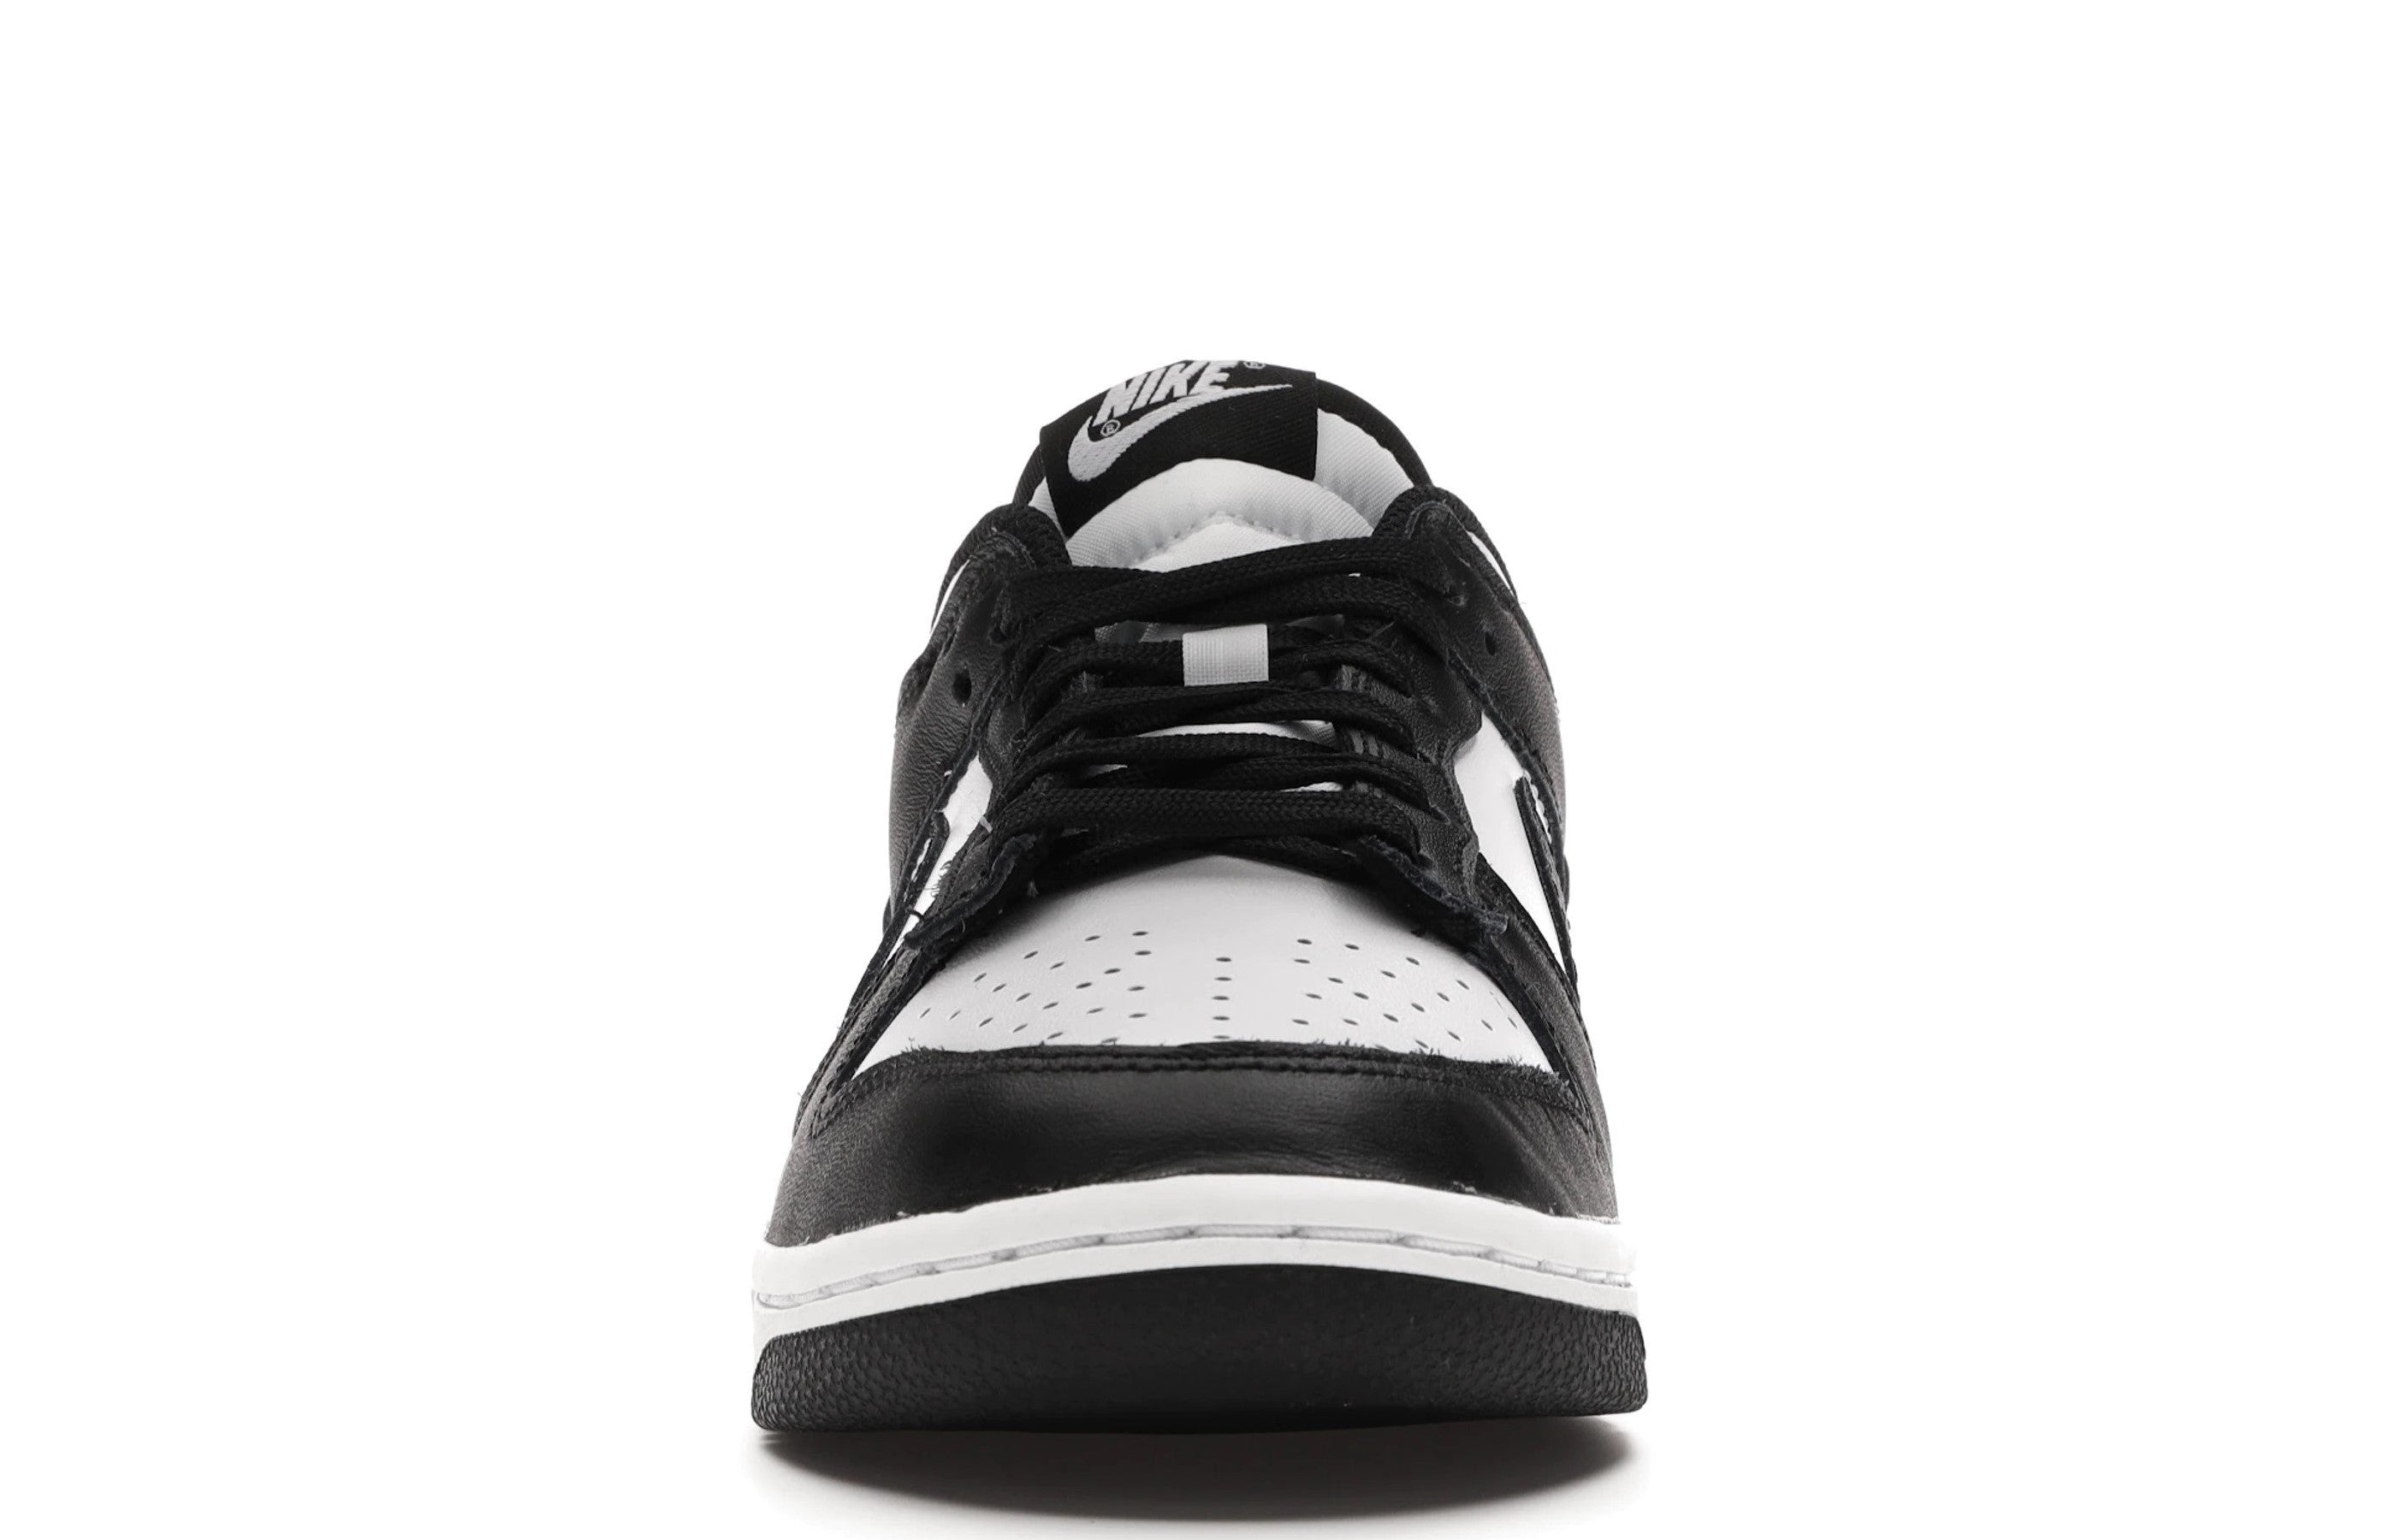 Nike Dunk Low White Black (2021) (W) "Panda"